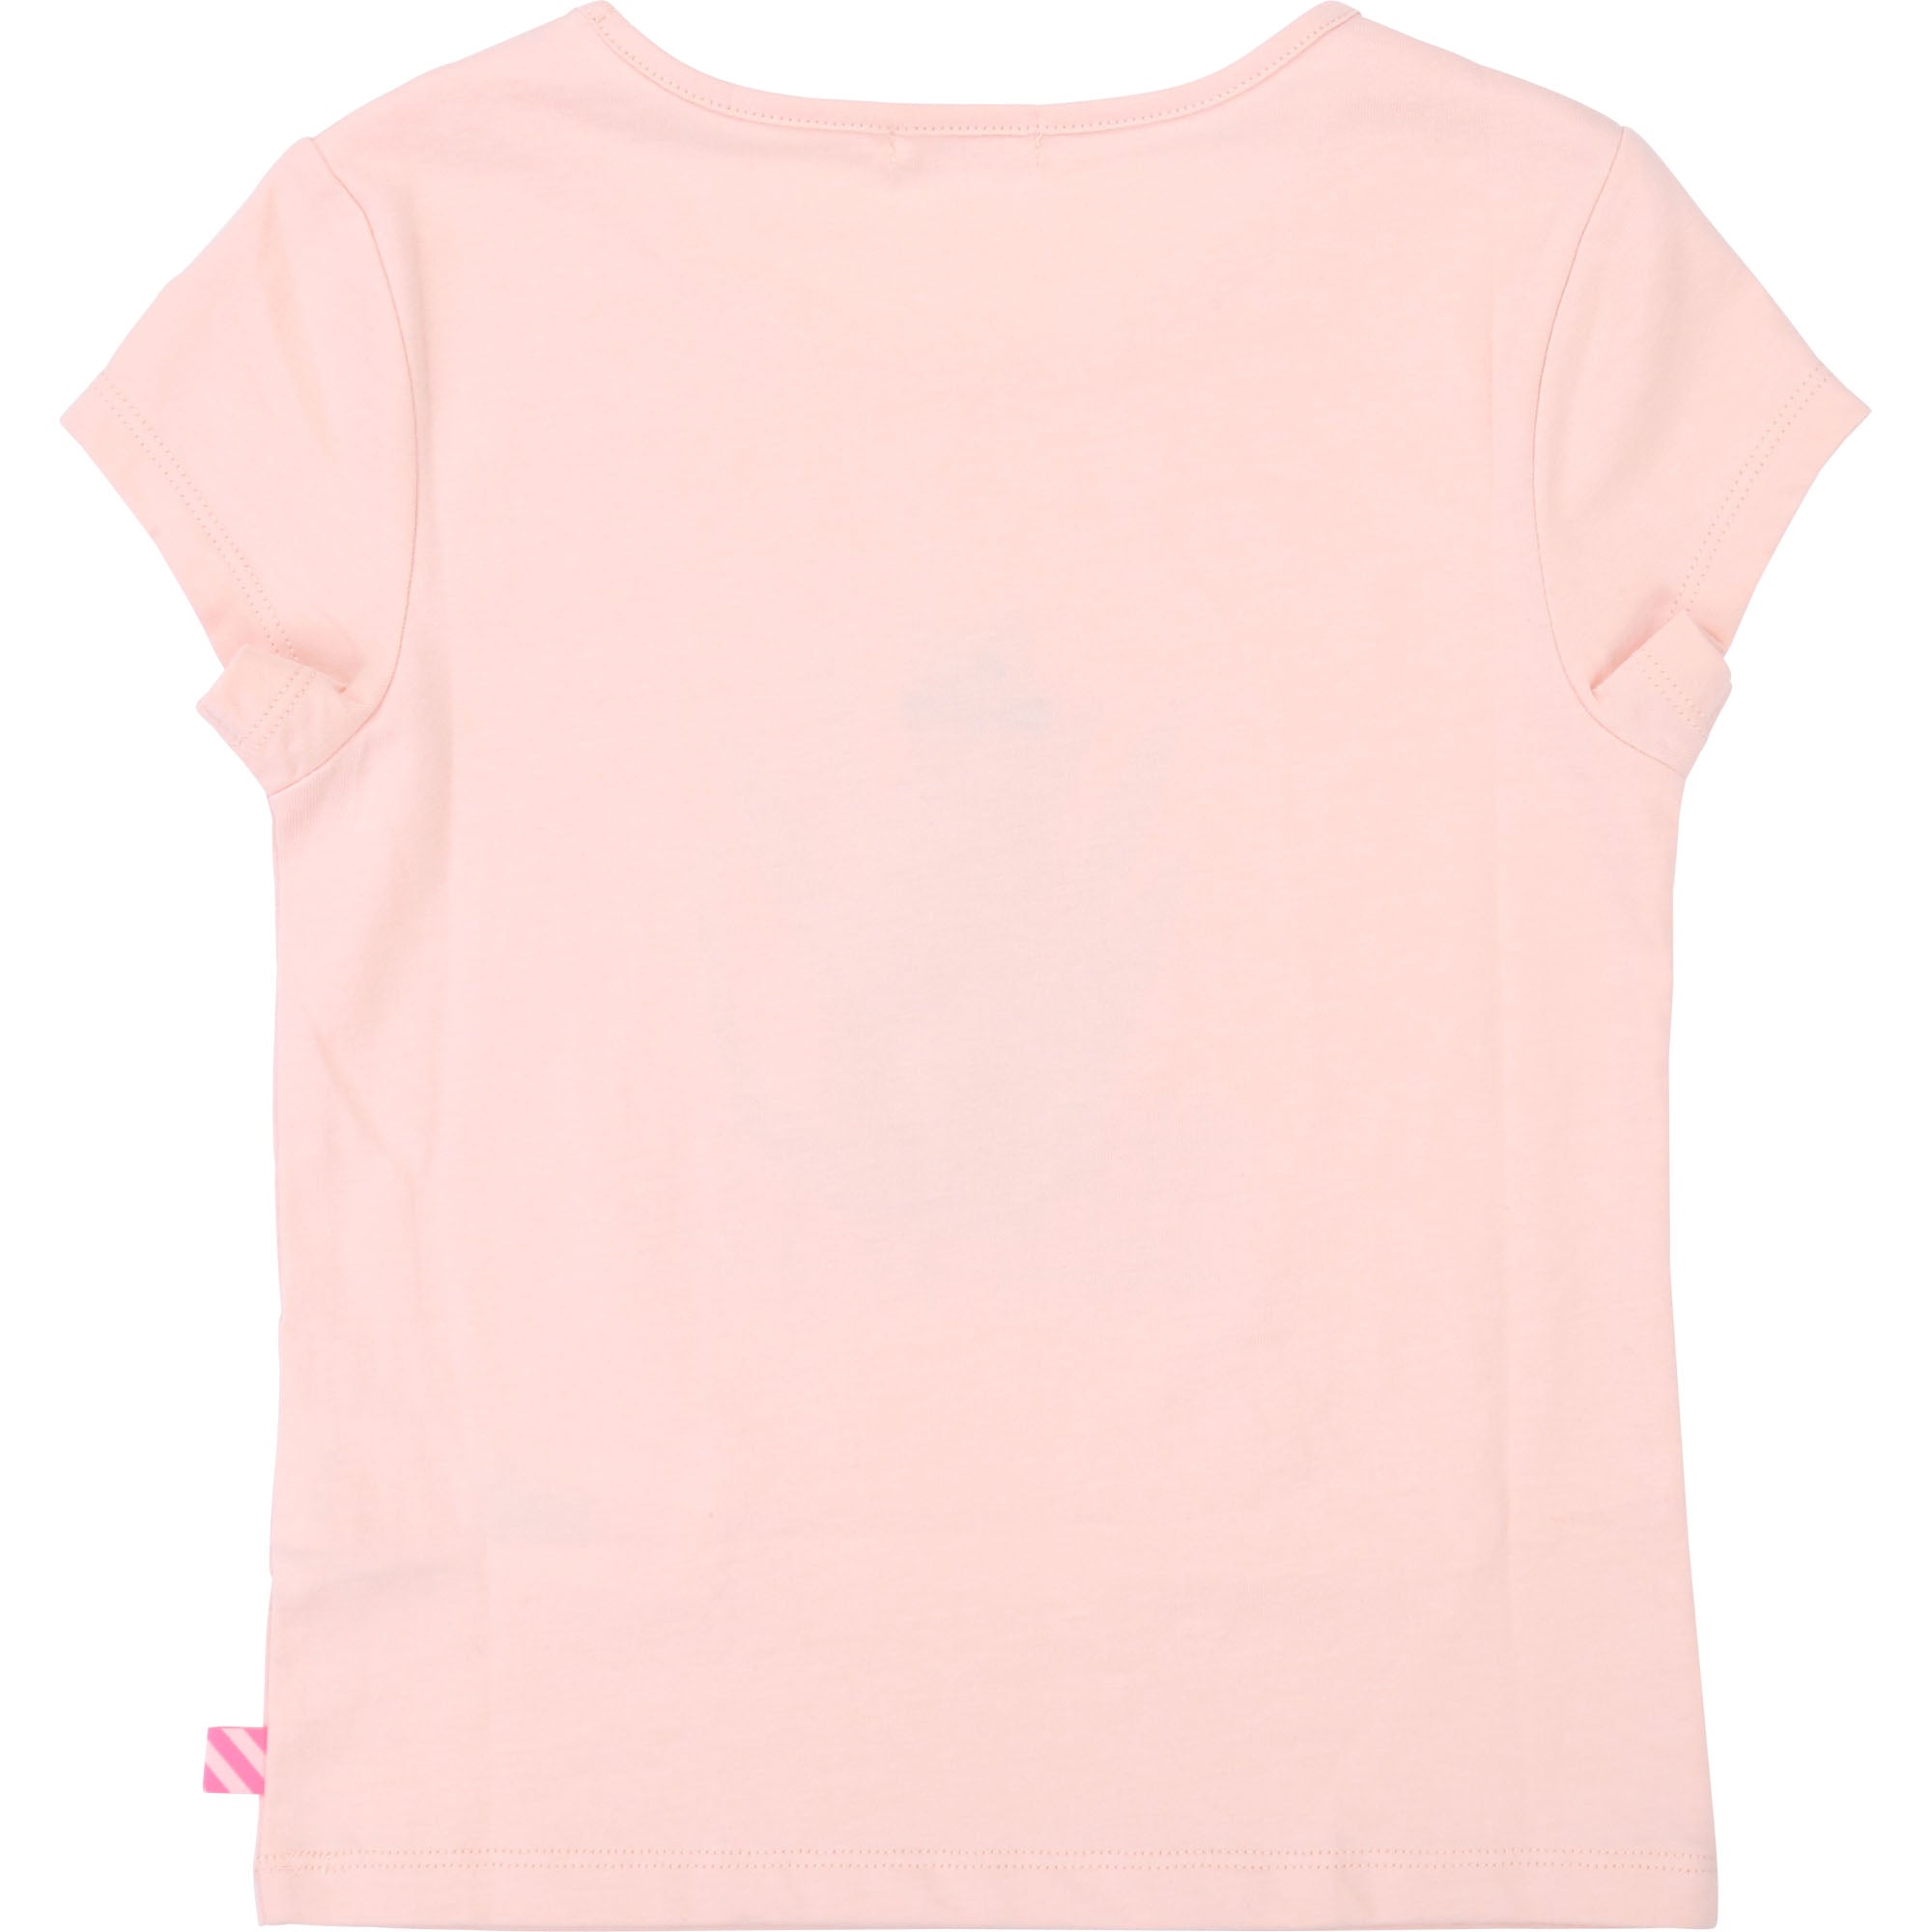 Girls Pink Printed Cotton T-shirt